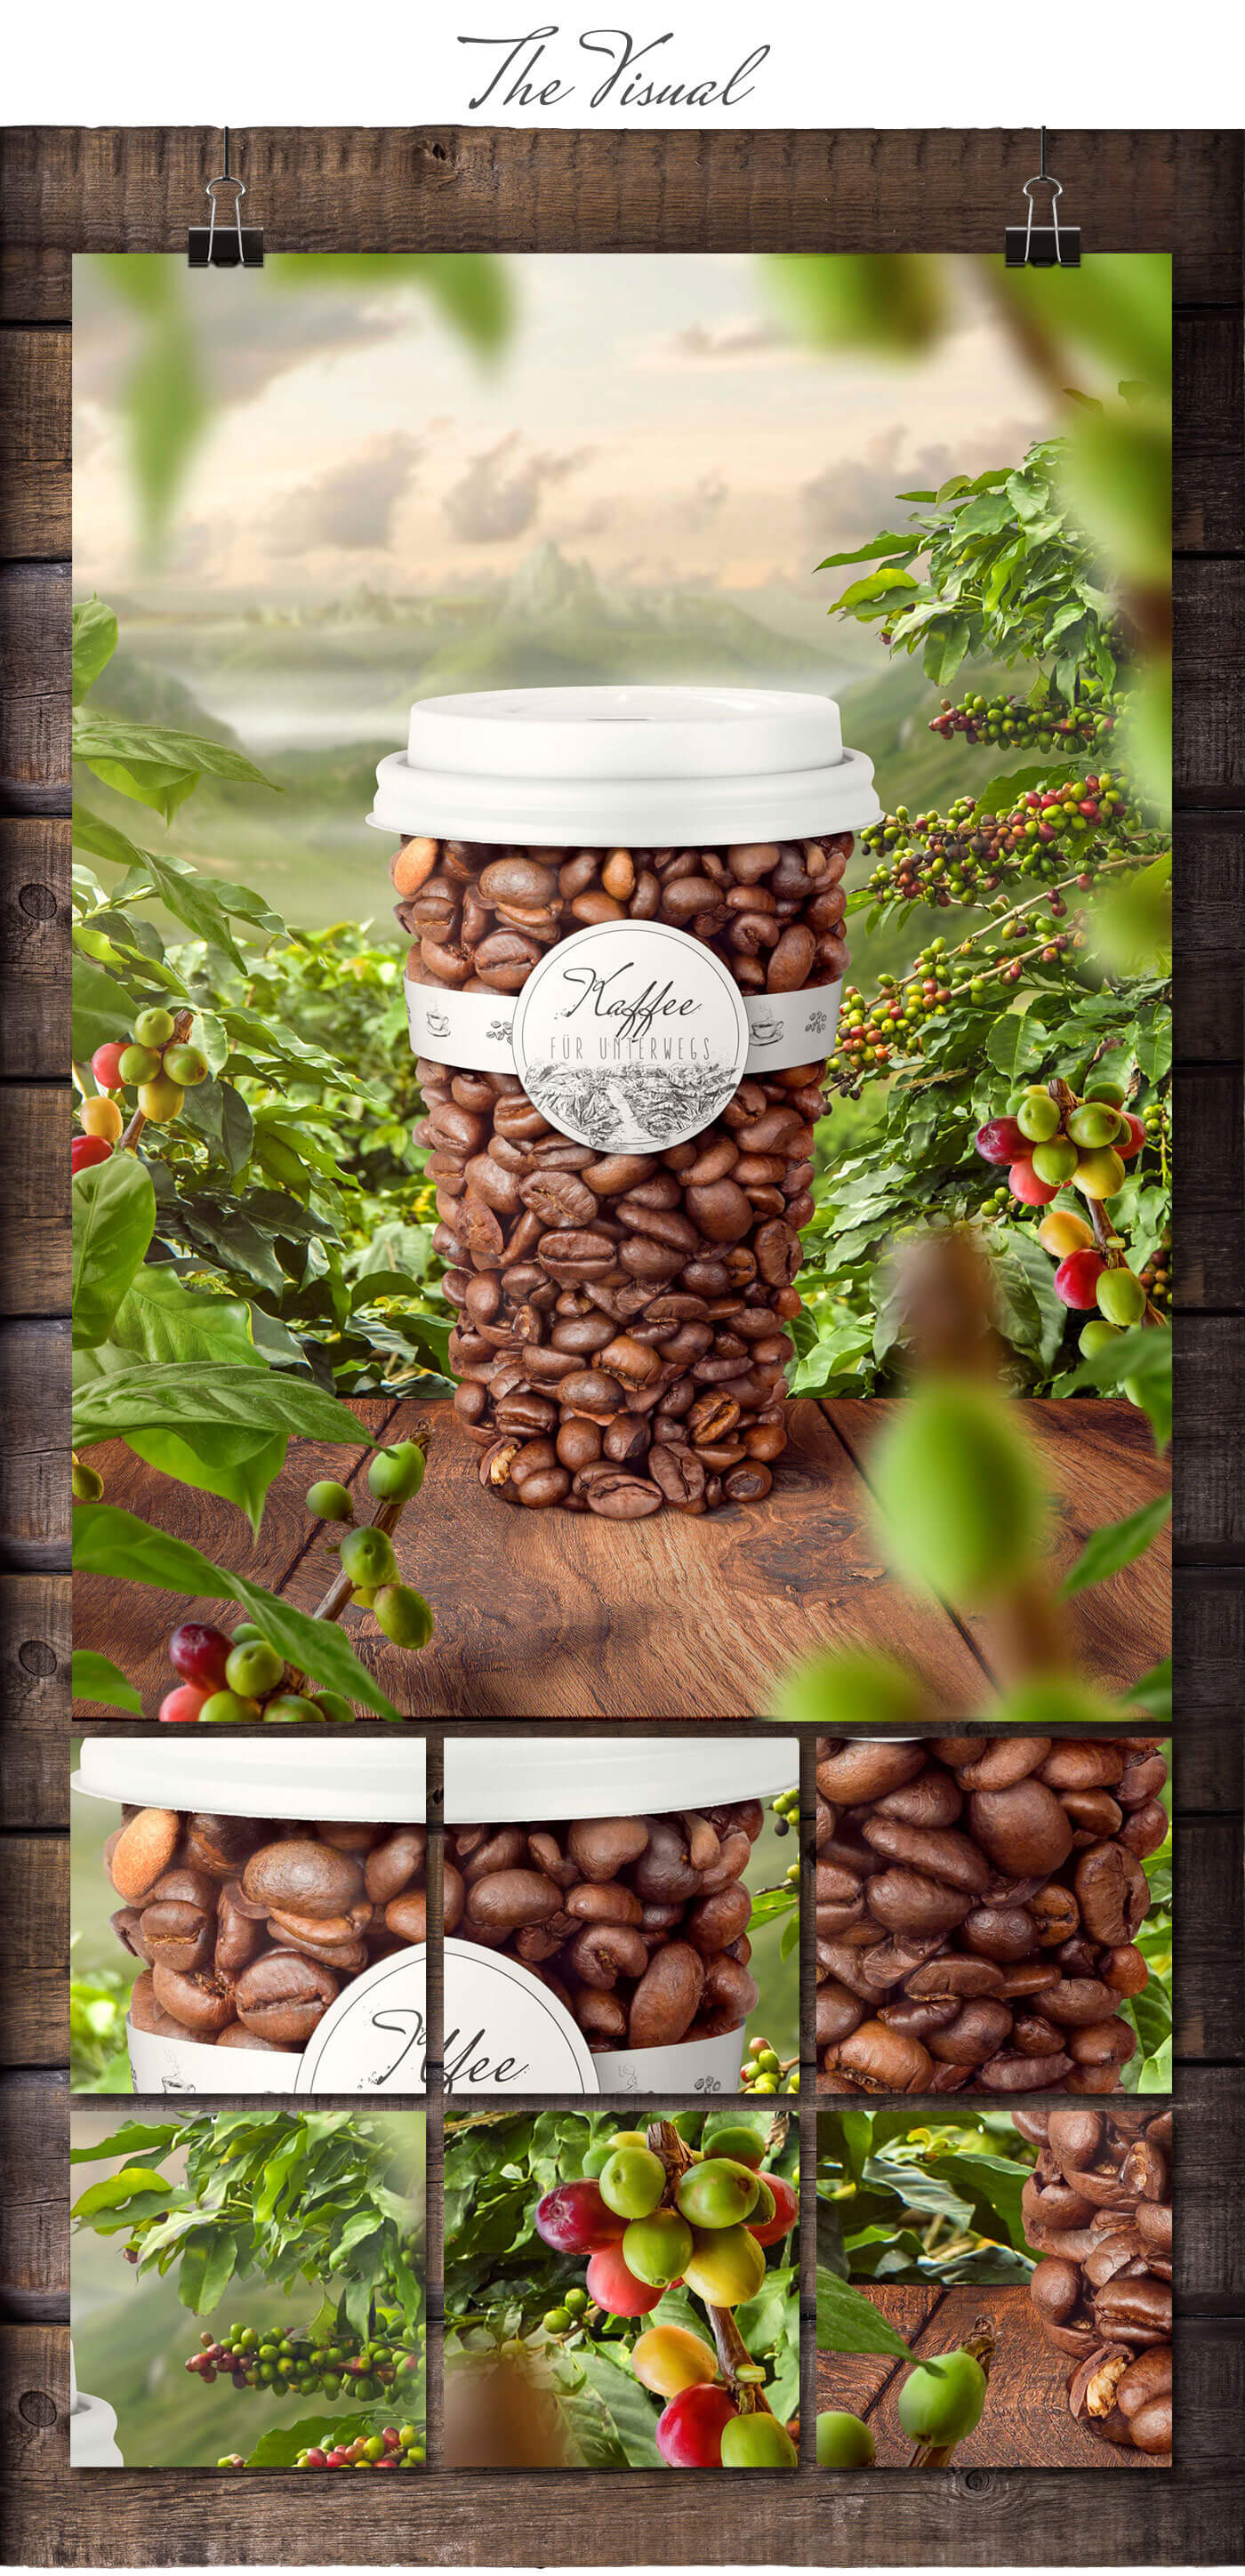 kaffee key Visual - produkt bild inszenierung aus ganzen früchten - photoshop kunst werbebild